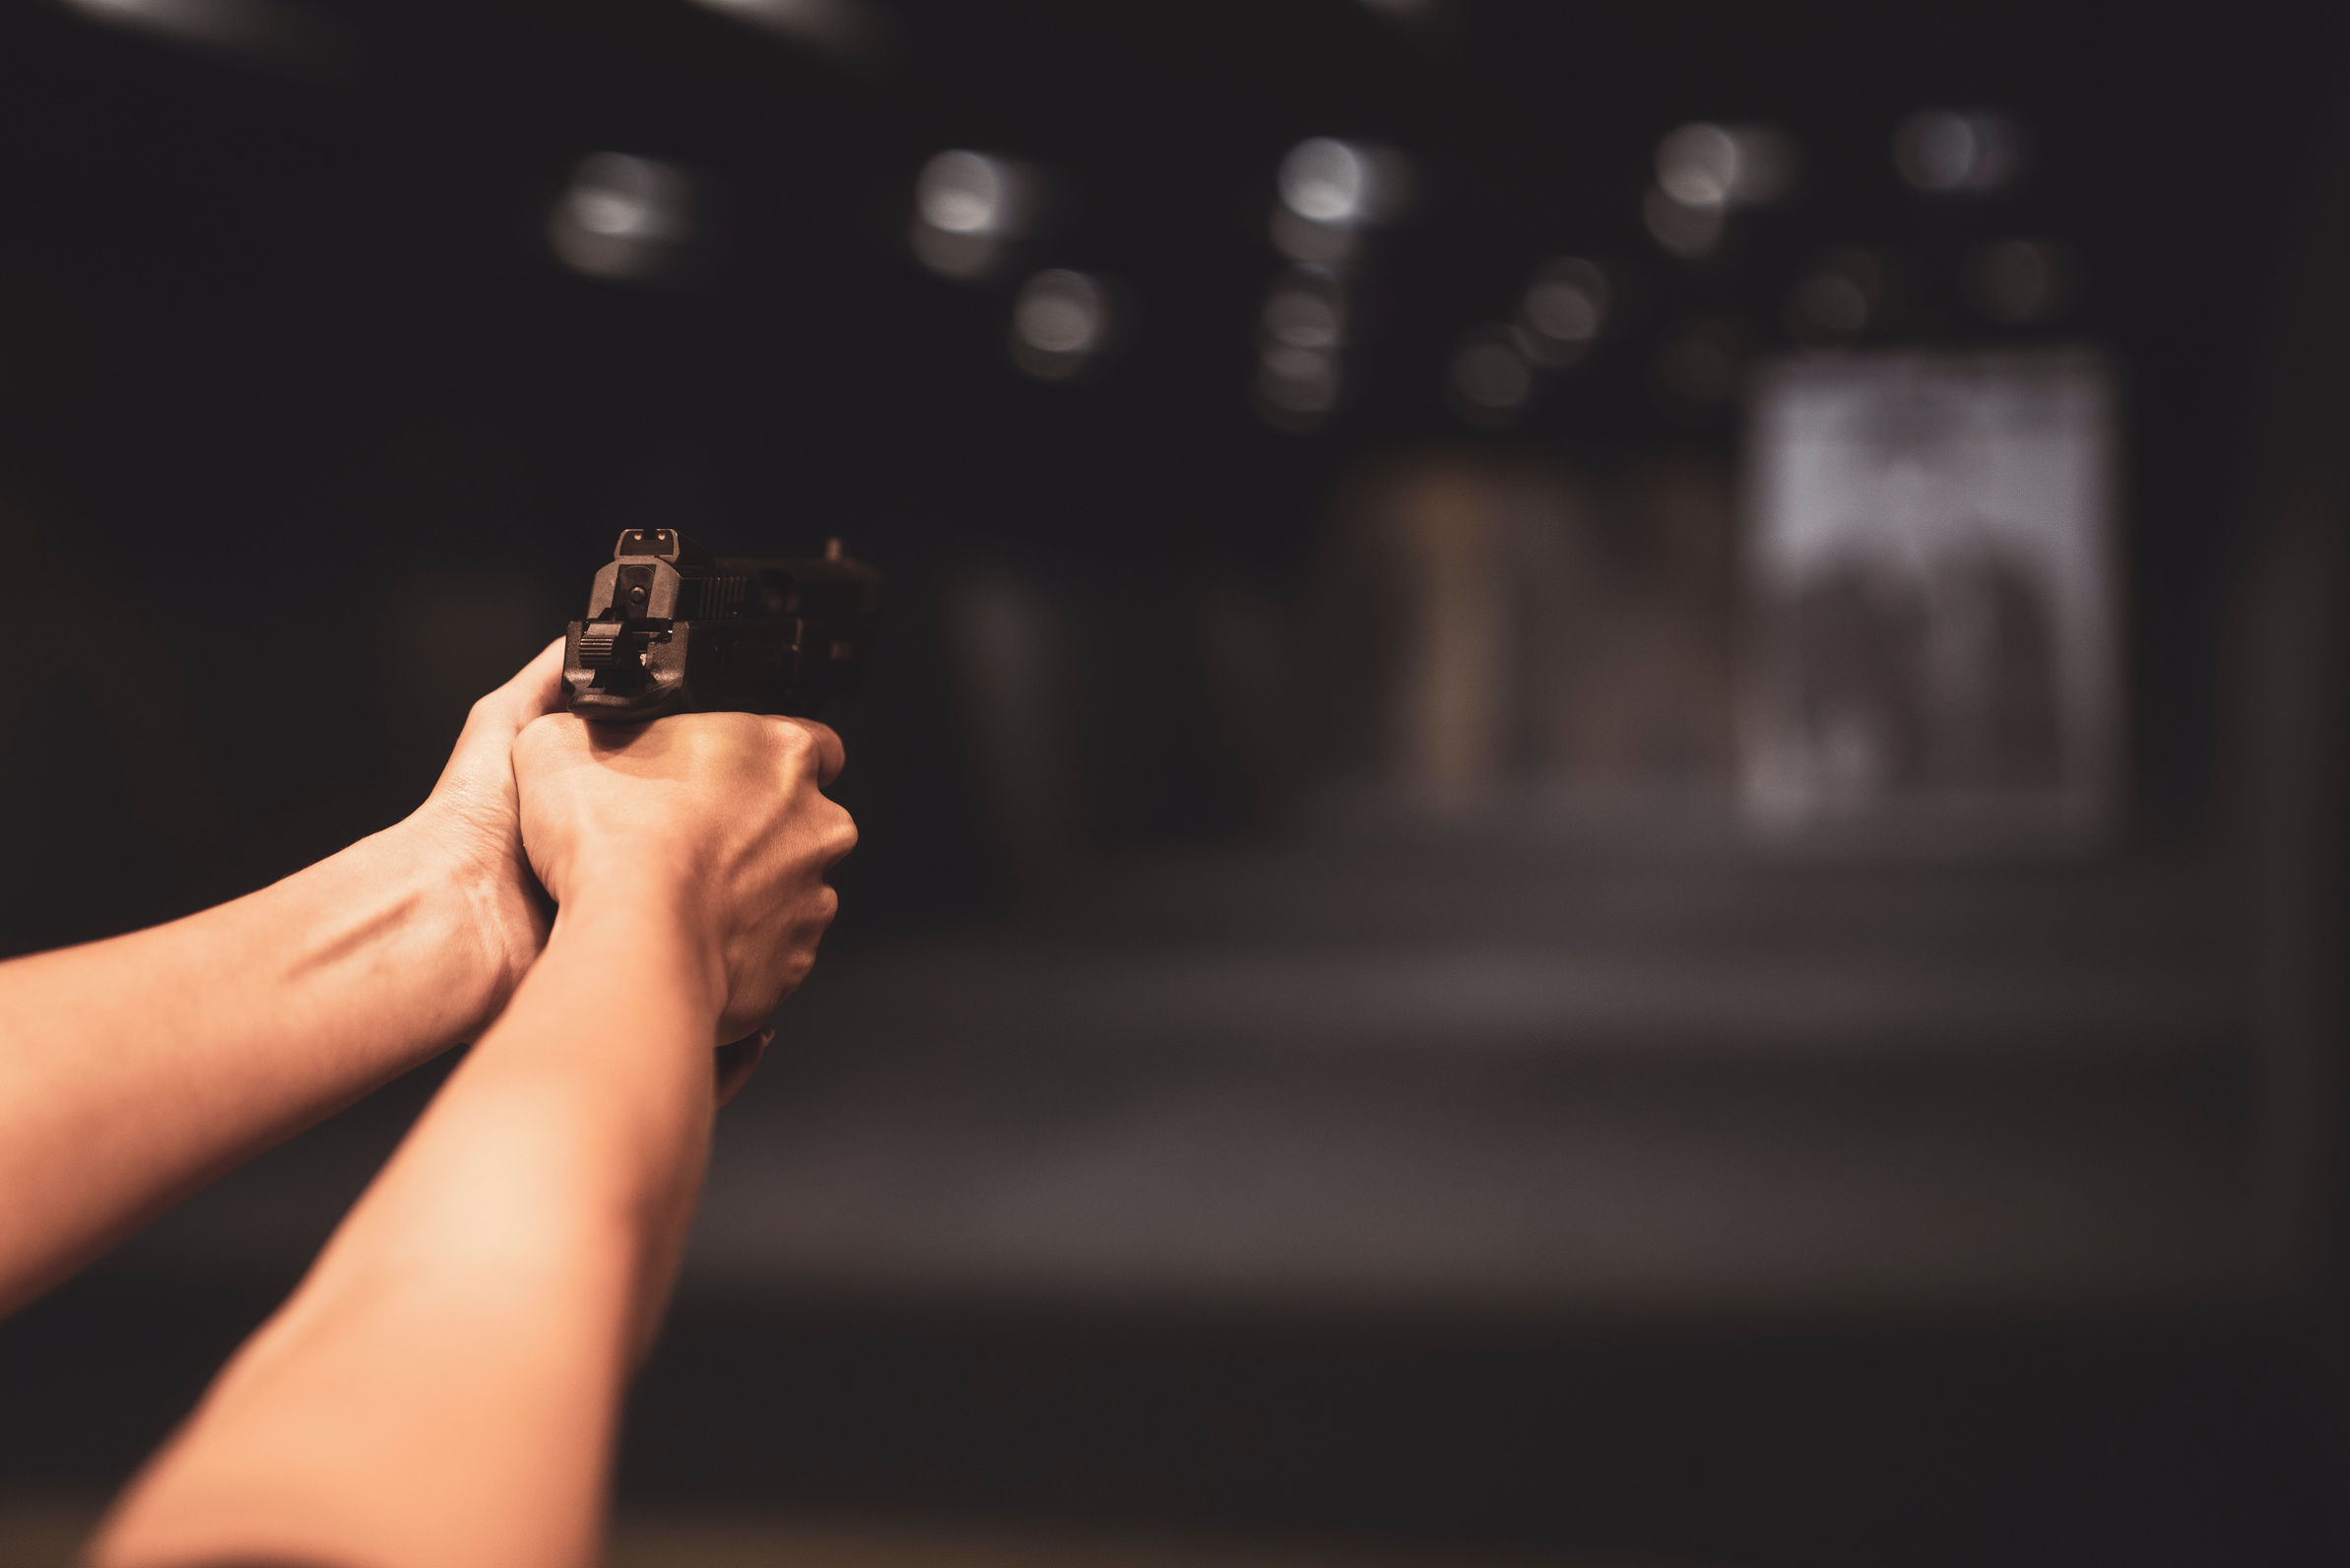 Shooting with Gun at Target in Shooting Range